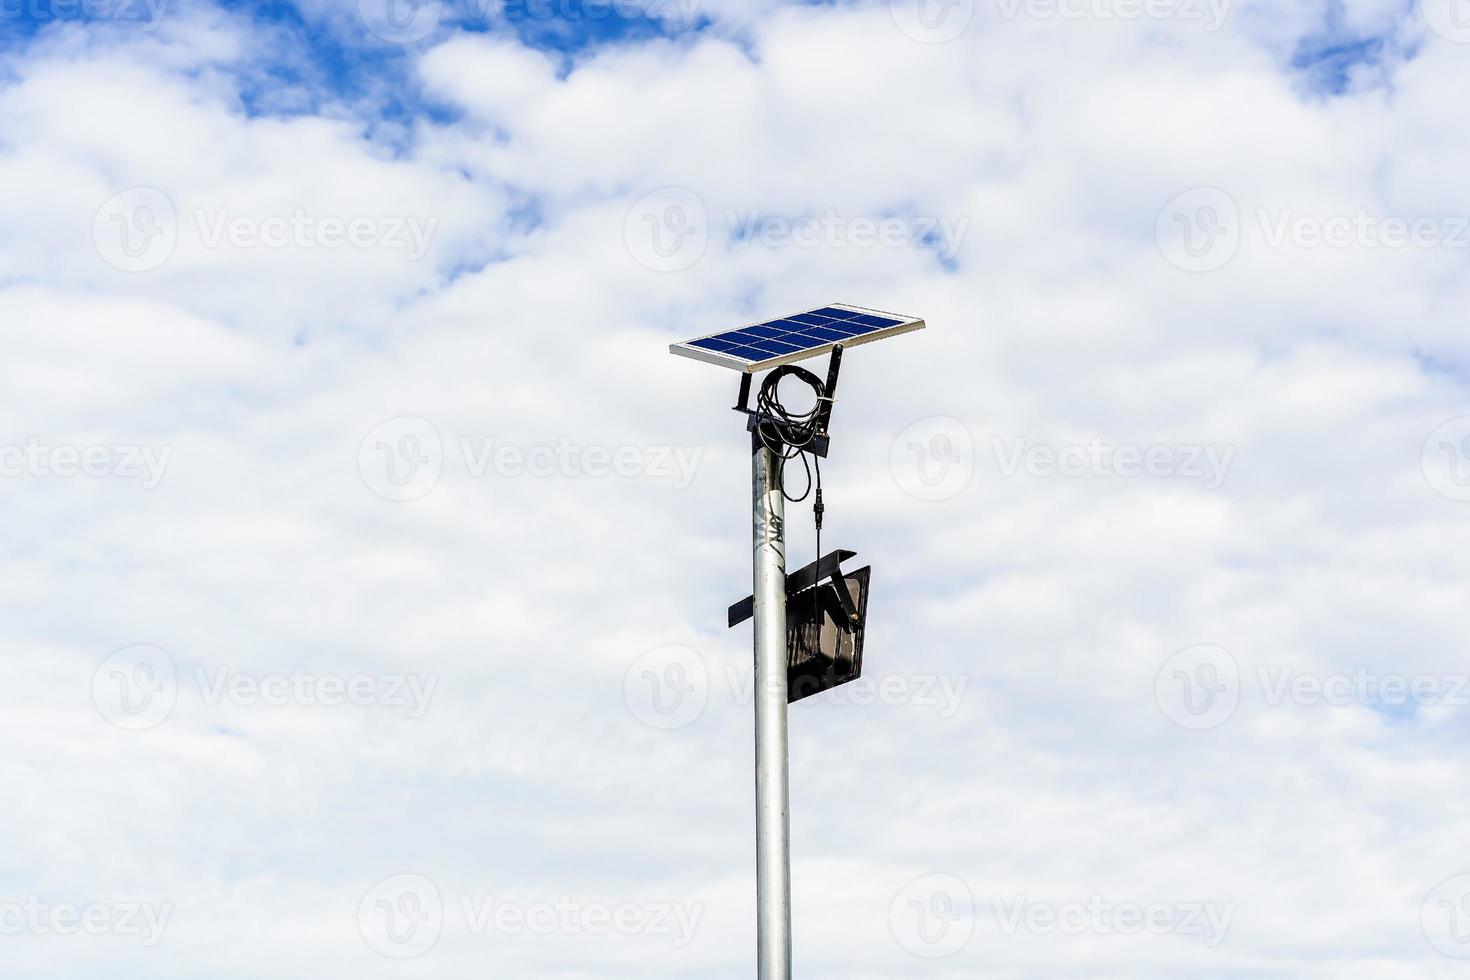 pequeno painel solar para luz na rua ou parque com nuvens brancas e céu azul. poste de iluminação ao ar livre com energia de painel solar de tamanho pequeno por si só, nova tecnologia e tendência de energia para área pública foto